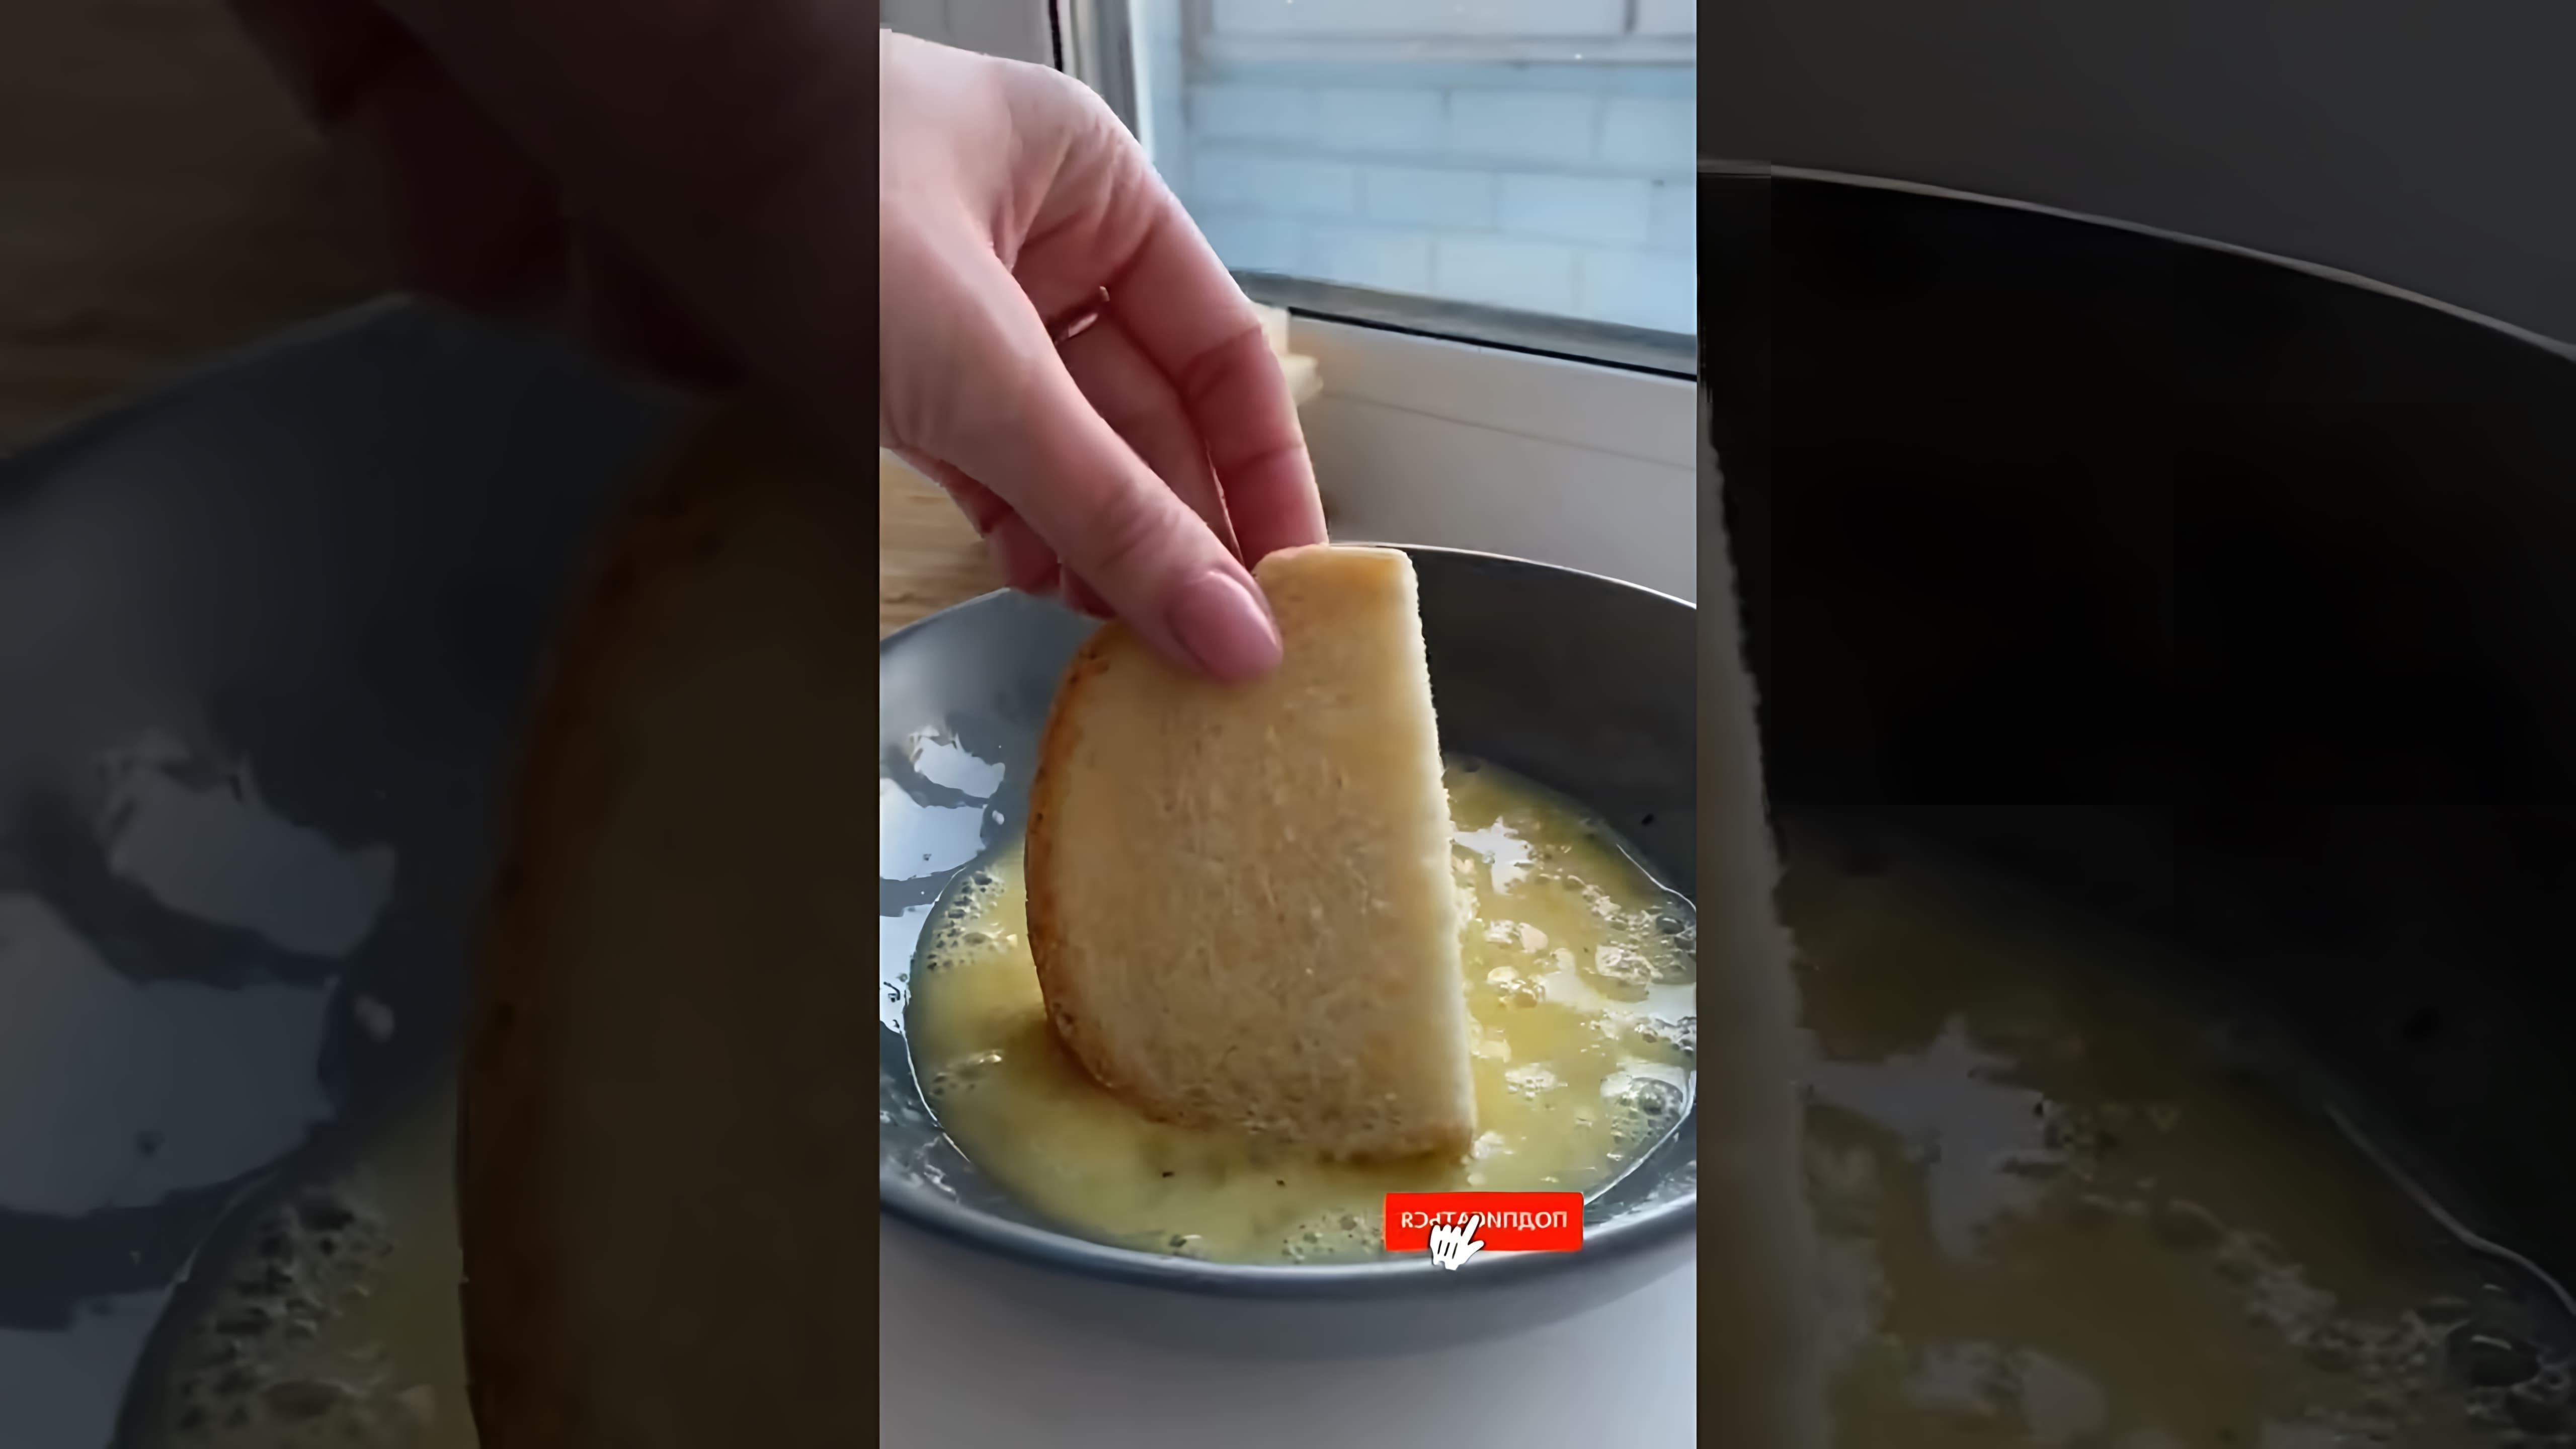 В этом видео рассказывается о том, как автор готовила соленые гренки для своей подруги, которая не любит соленые гренки и предпочитает сладкие